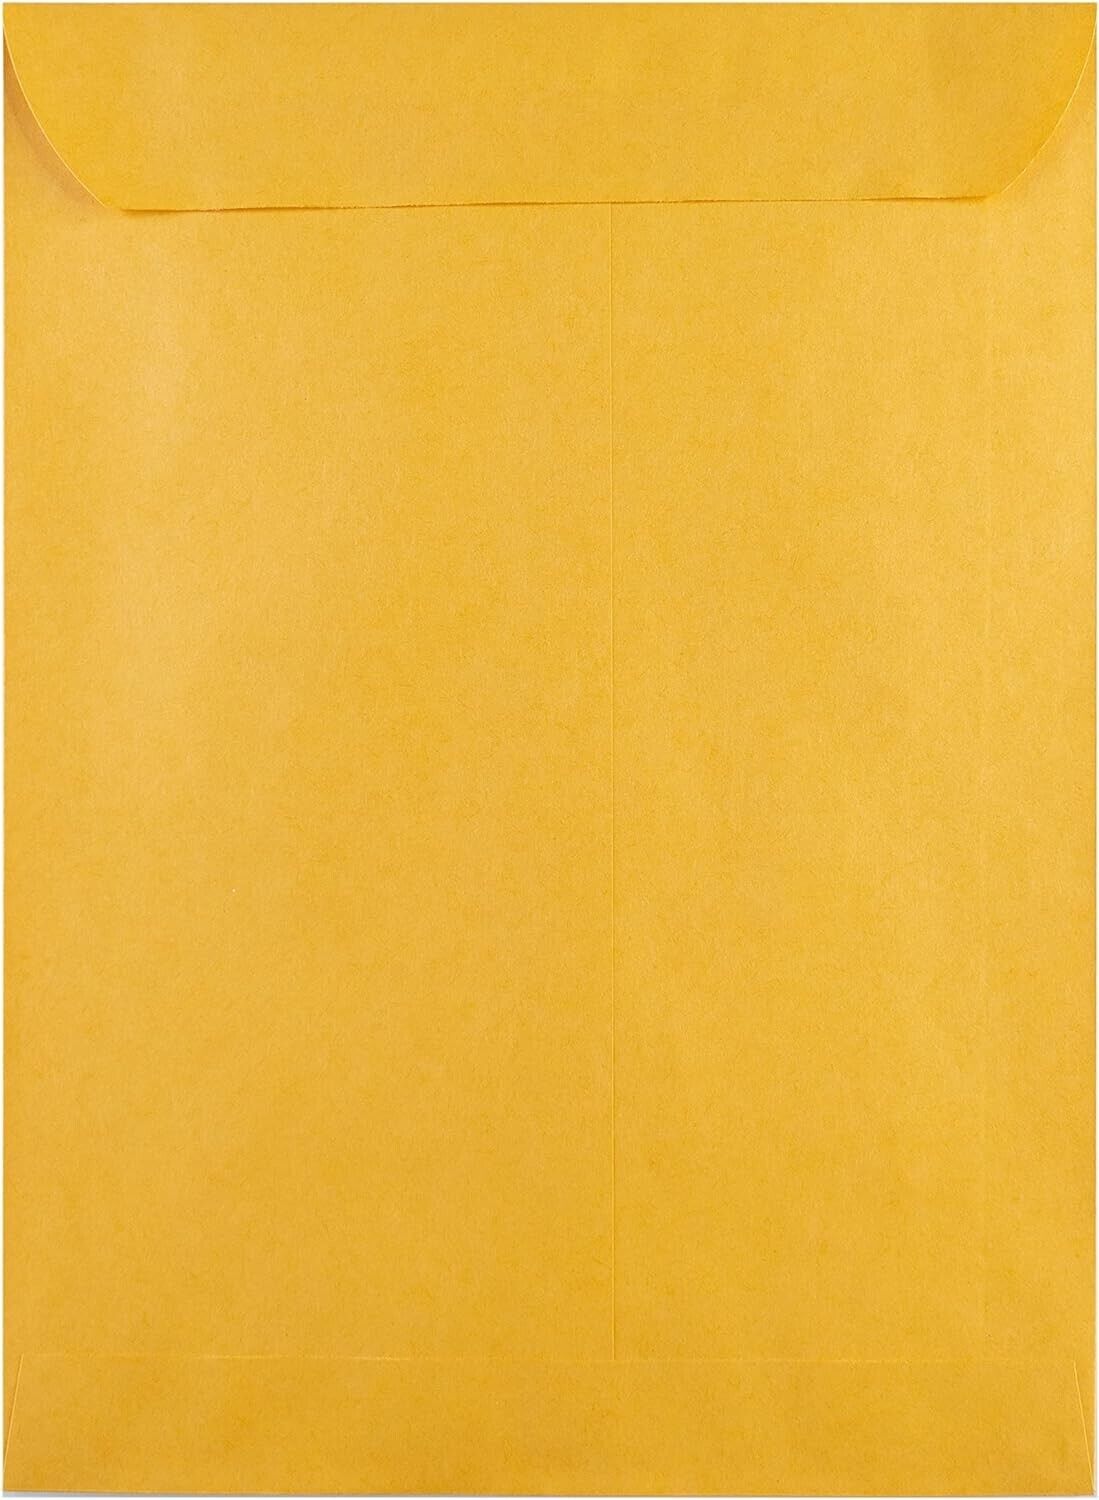 Press-it Seal-it Kraft Envelopes - Self-Seal, Suntan Material - 9 X 12 - 25 Pack